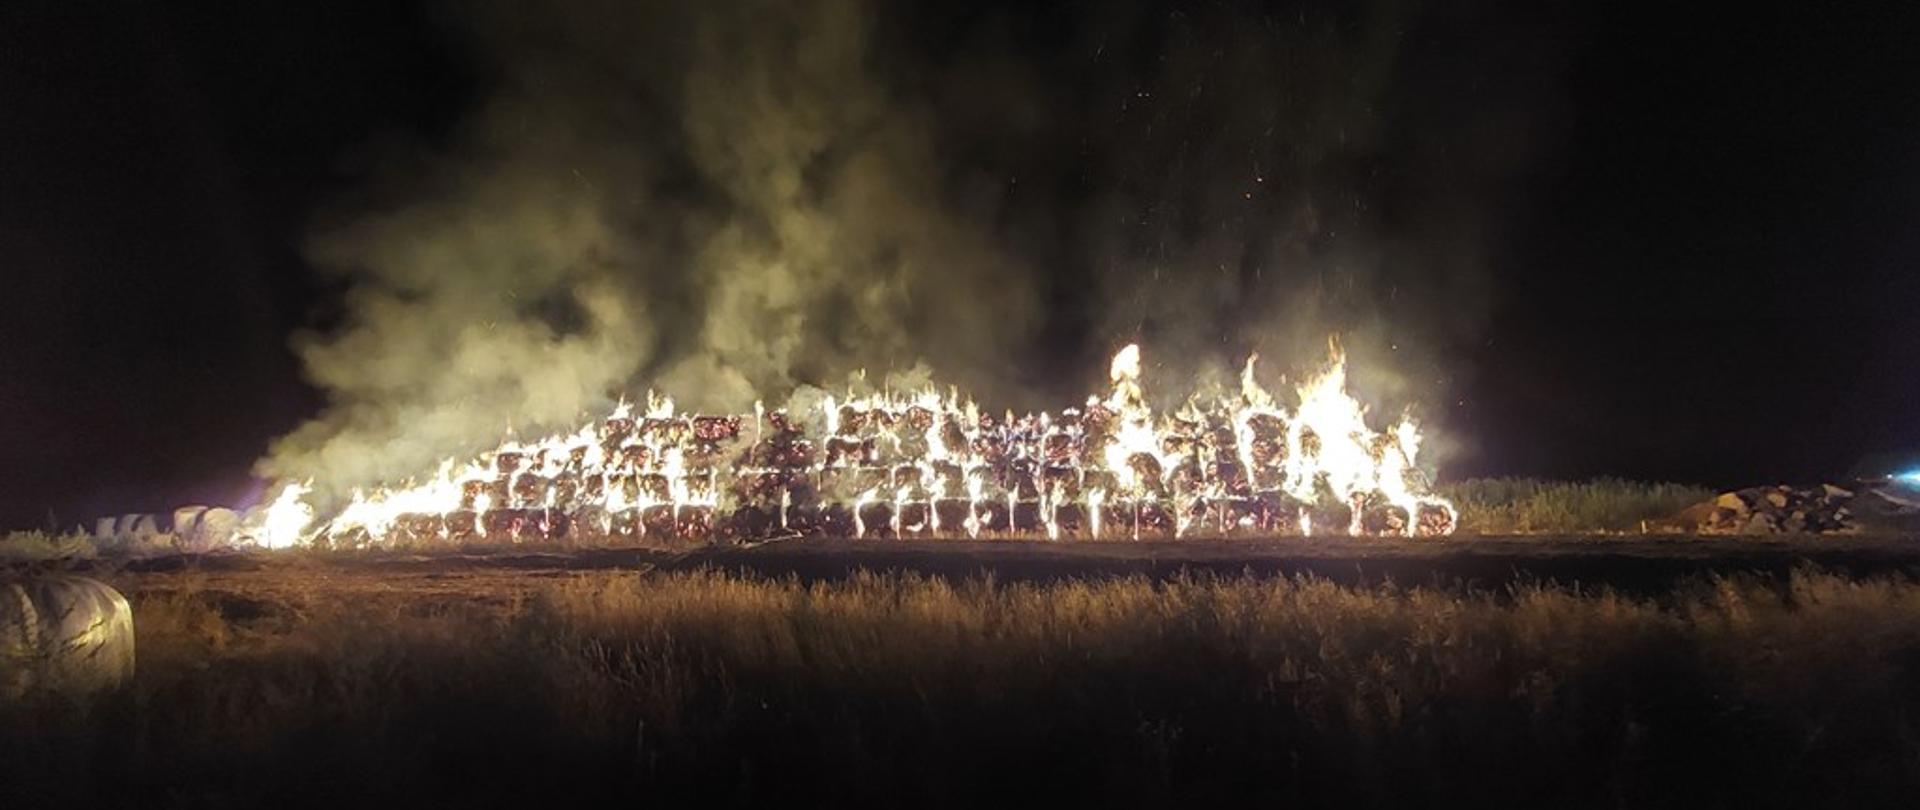 na zdjęciu widać pożar ponad 200 balotów słomy ułożony w stóg